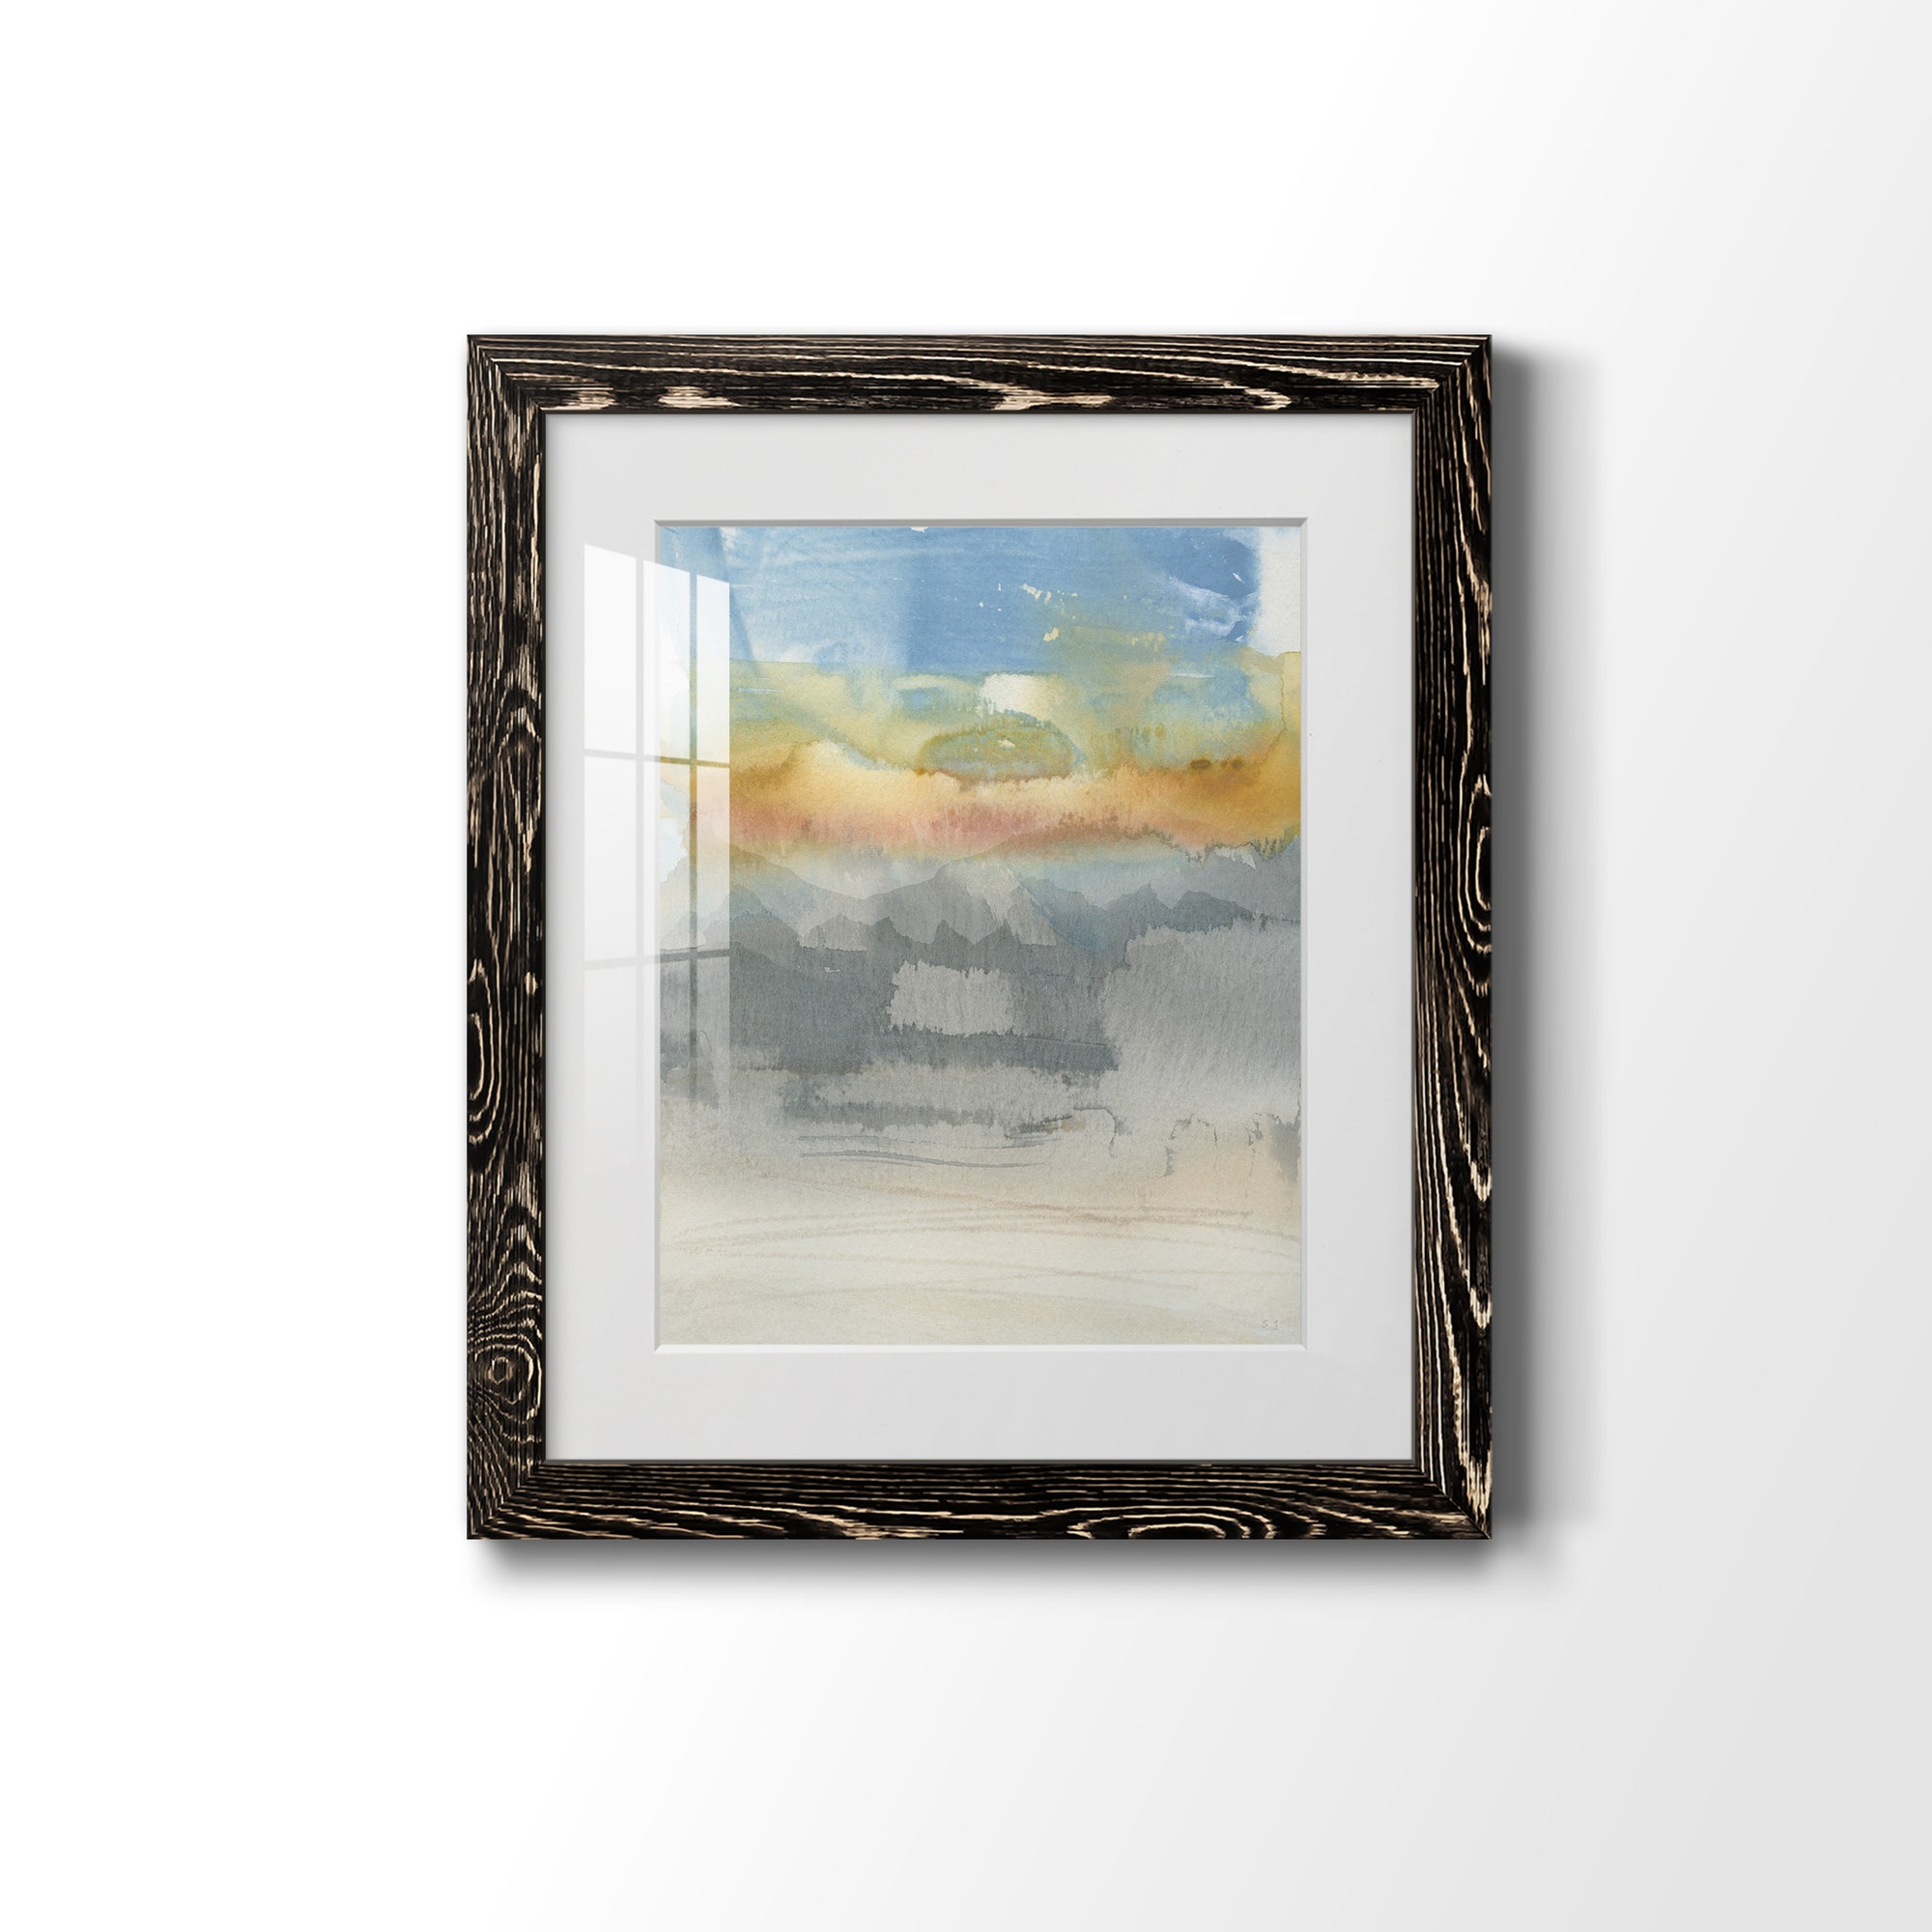 High Desert Sunset II - Premium Framed Print - Distressed Barnwood Frame - Ready to Hang